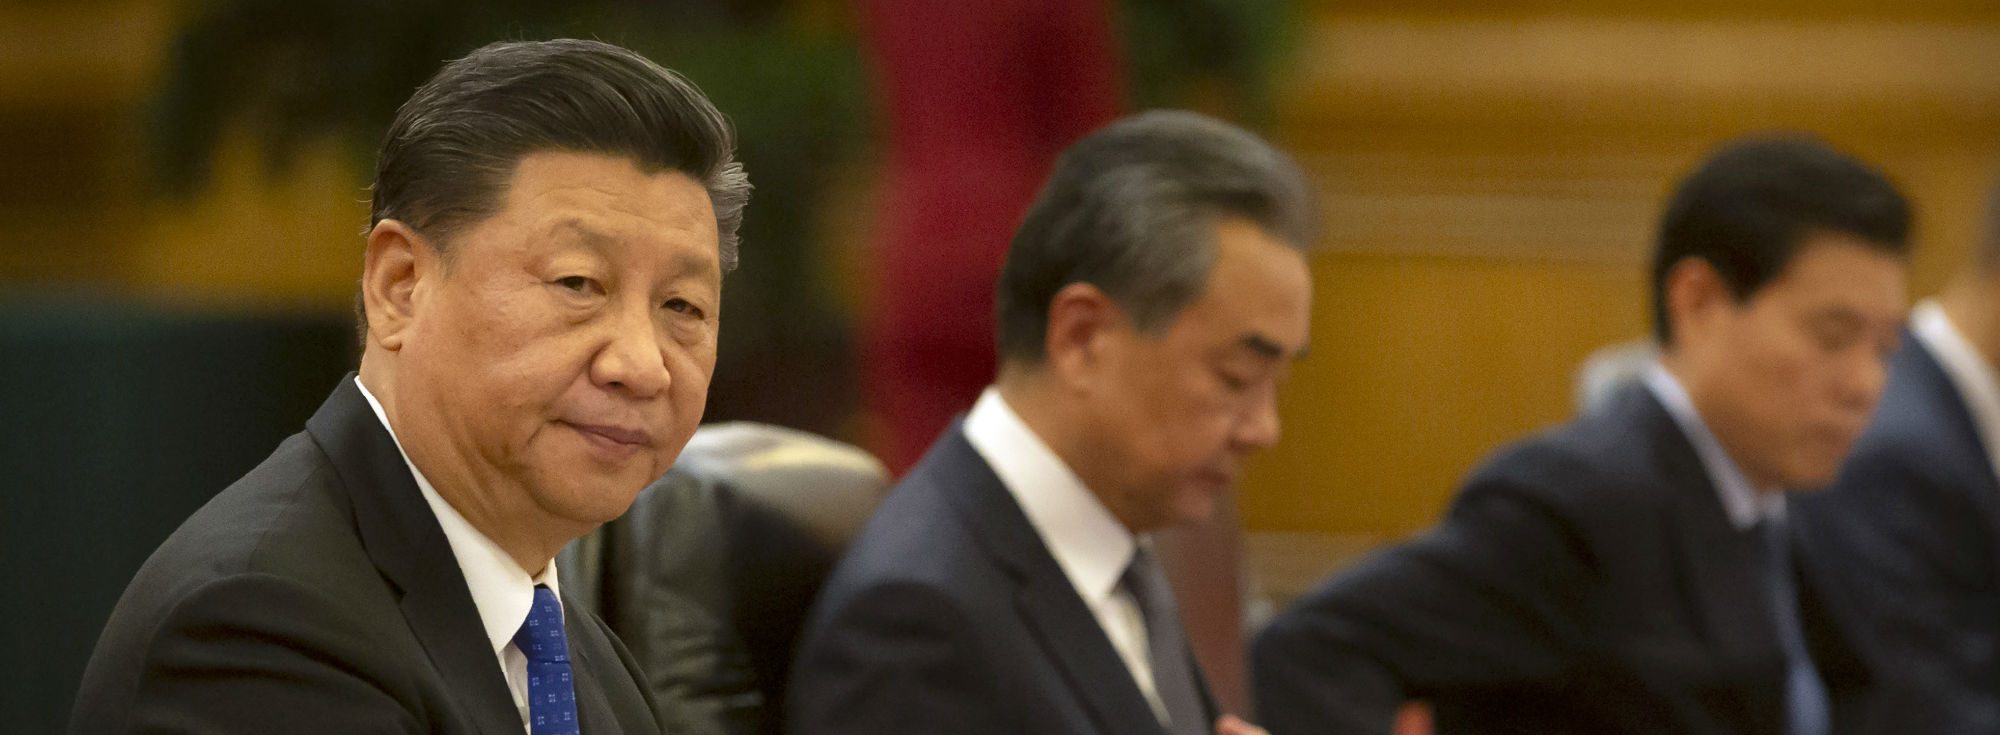 Comment le président chinois Xi Jinping résoudra-t-il les divisions idéologiques dans les plus hautes instances du pouvoir à Pékin ? (Source : Geopolitical Futures)